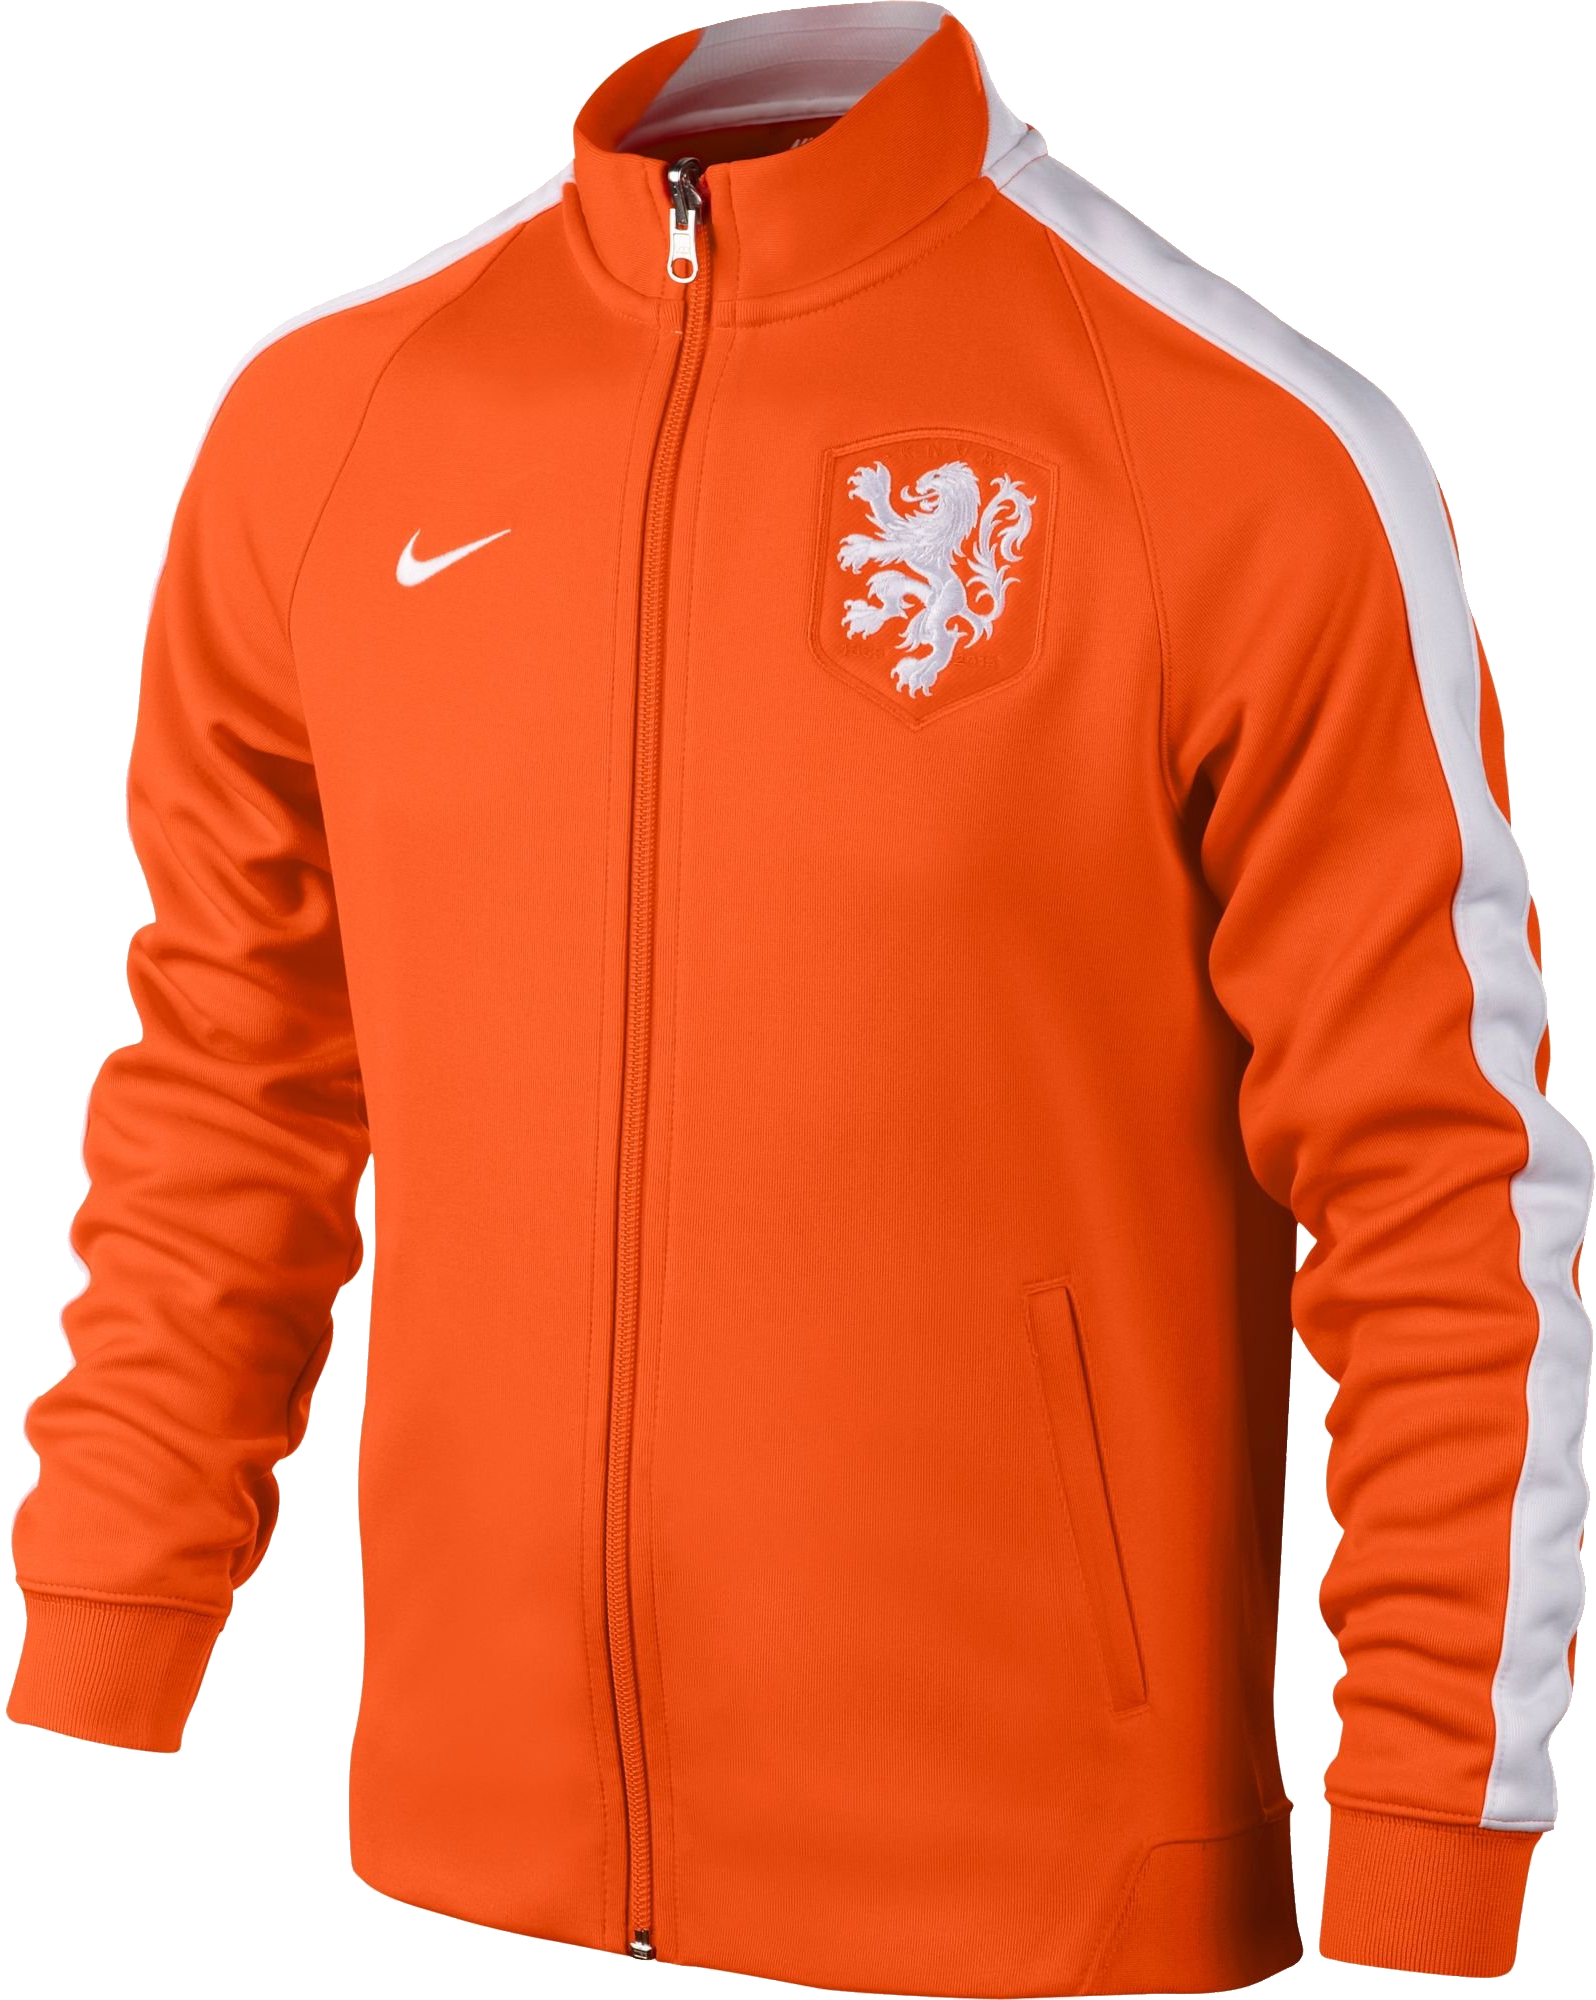 オレンジ色のジャケット